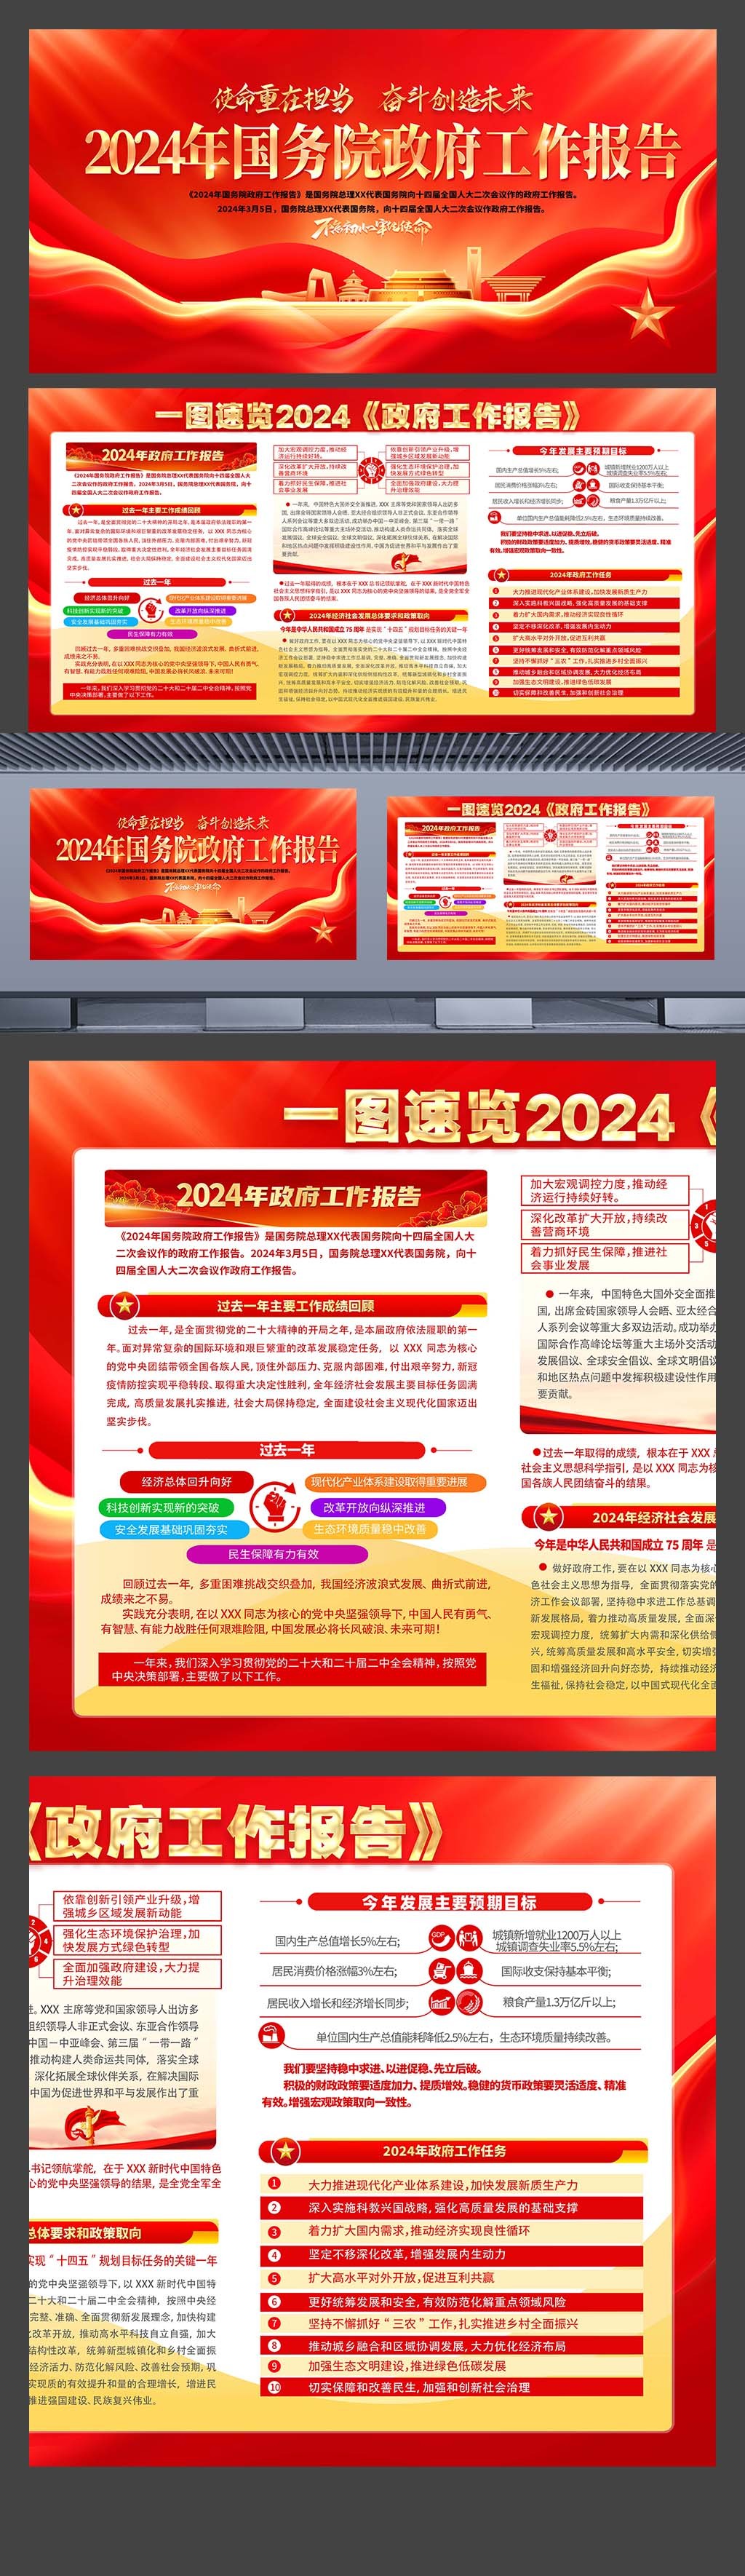 2024年全国两会政府工作报告速览宣传展板